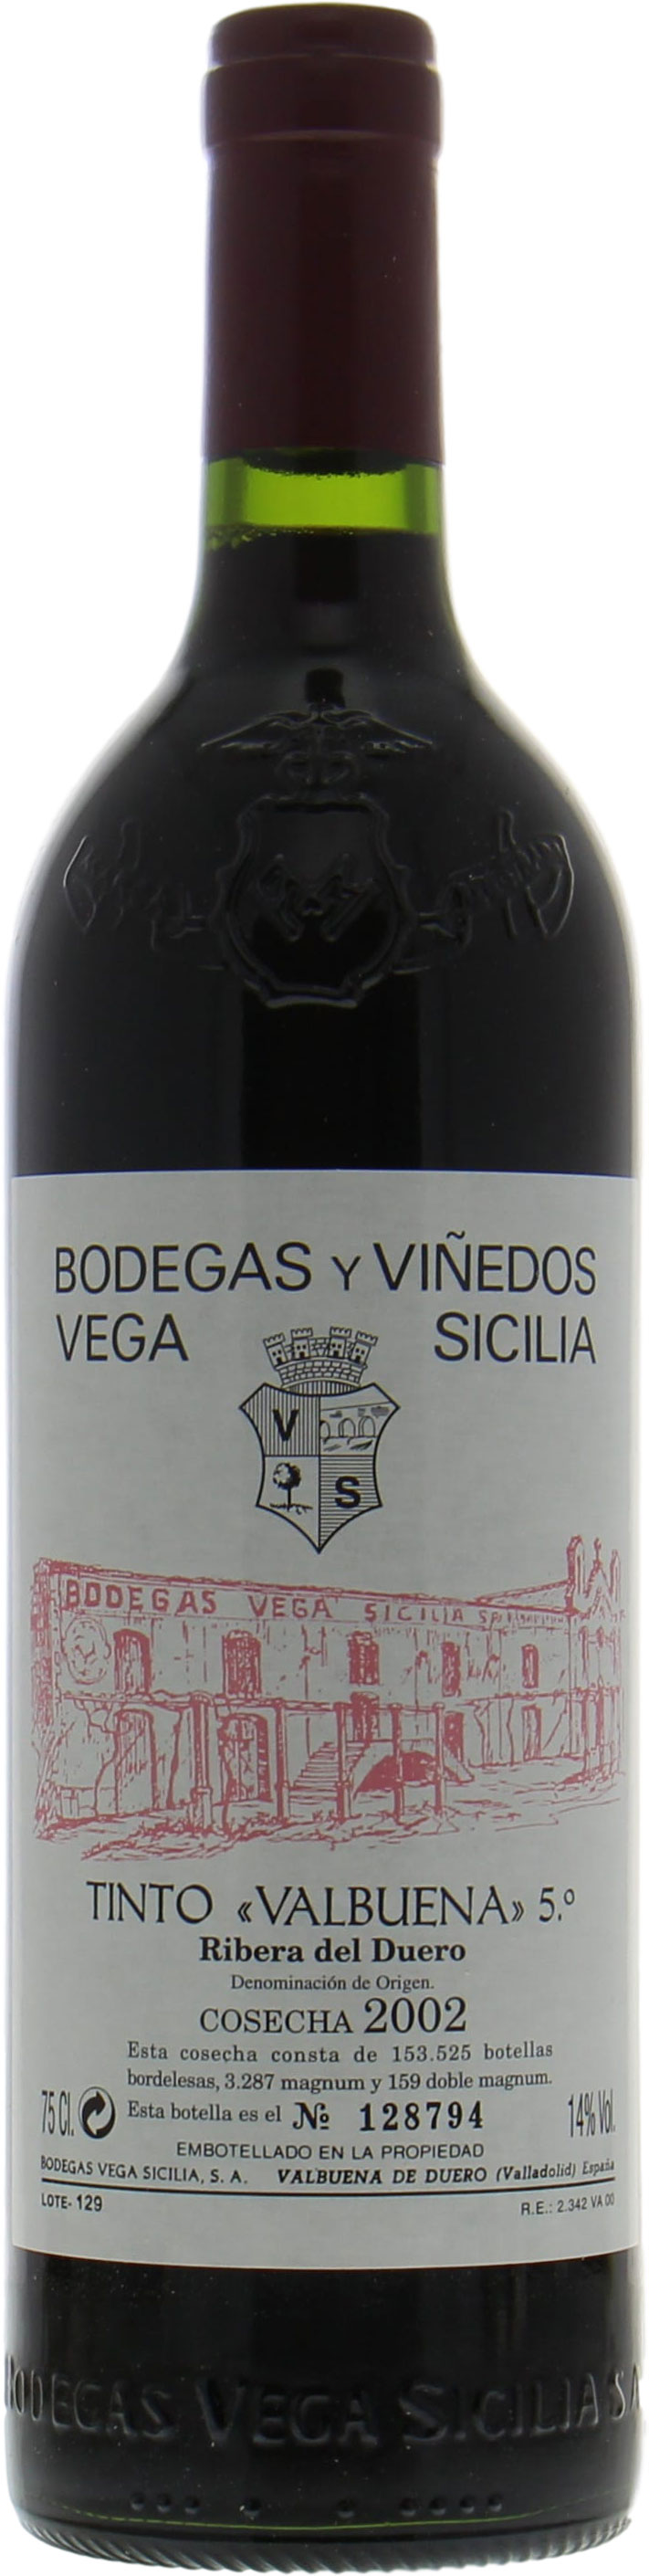 Vega Sicilia - Valbuena 2002 Perfect